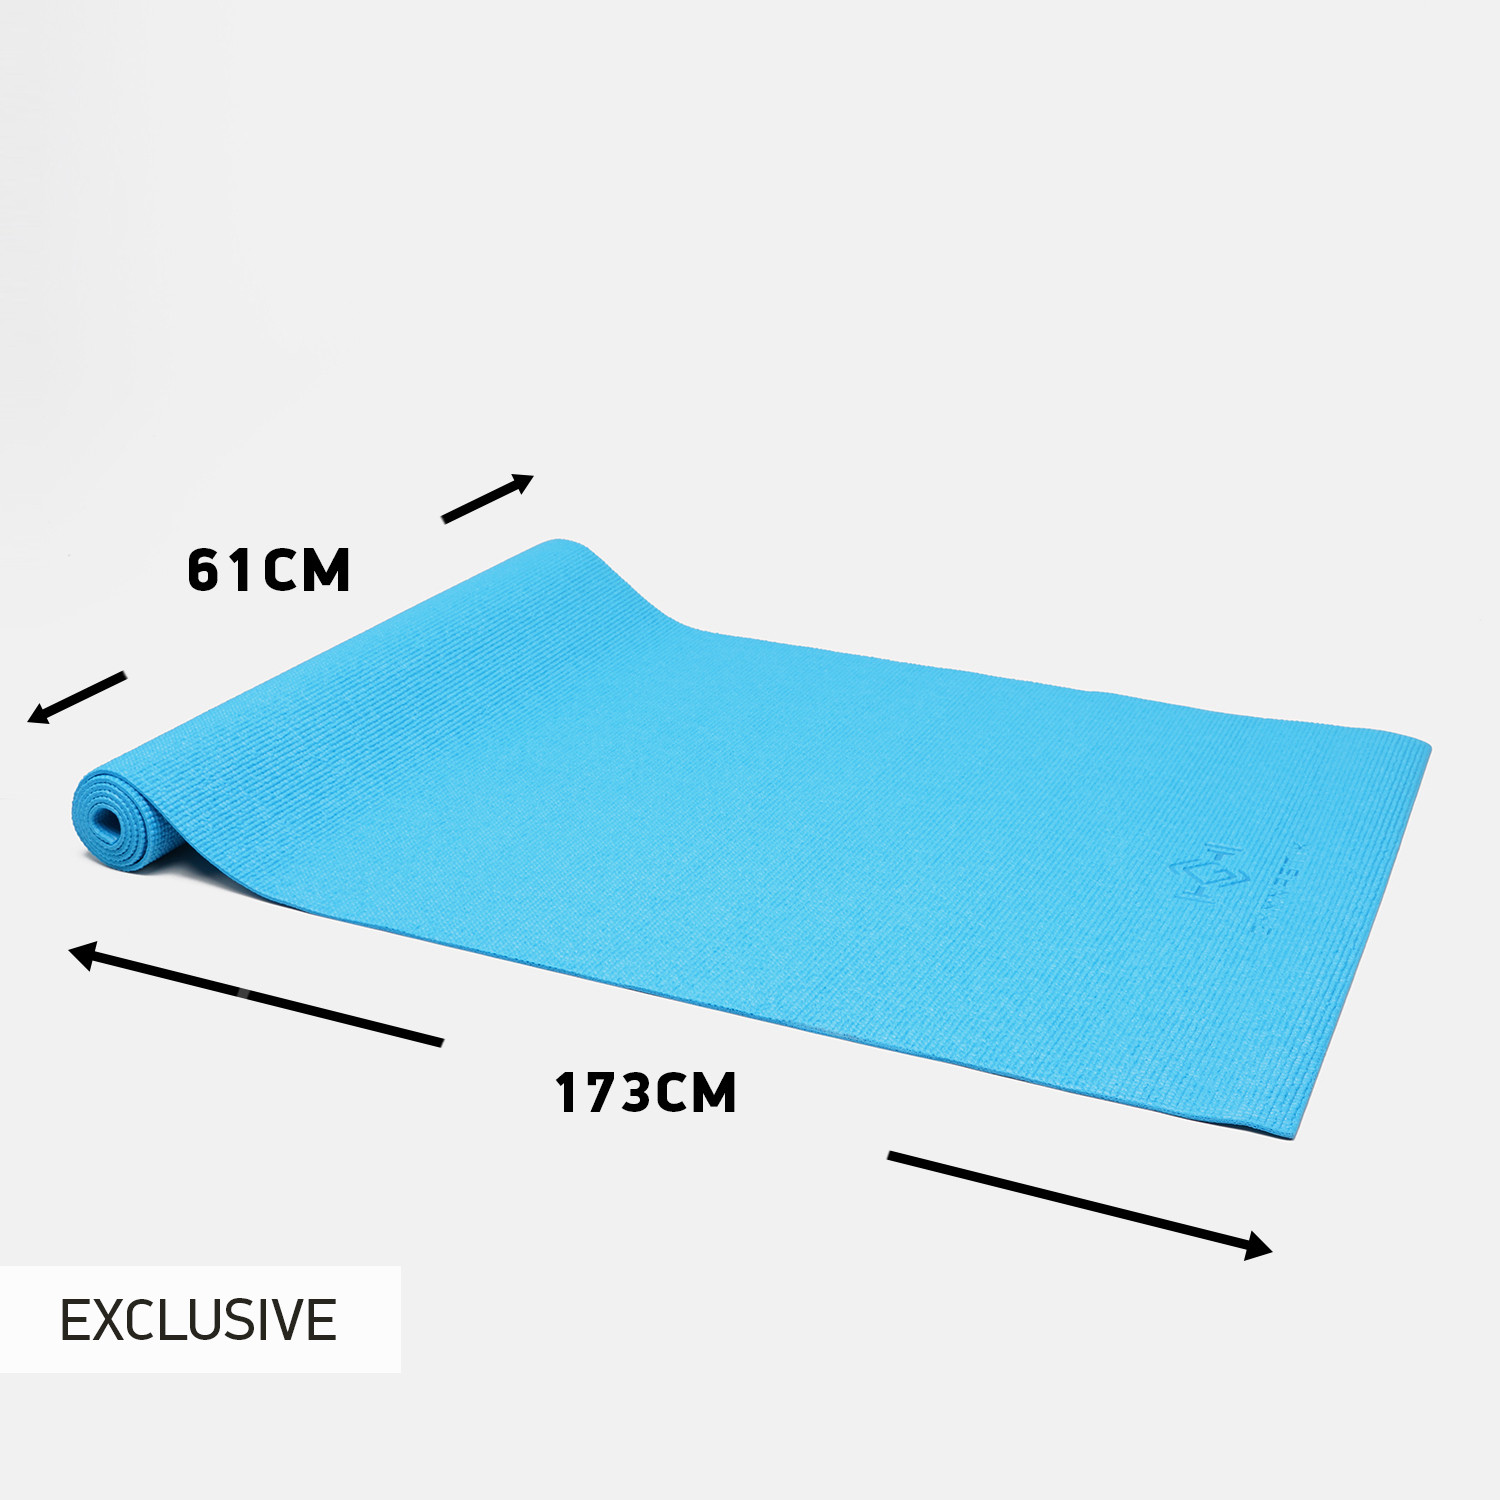 GYMNASTIK PVC Î£Ï„ÏÏŽÎ¼Î± Yoga 173 x 61 x 0,4 cm (9000091581_3024)